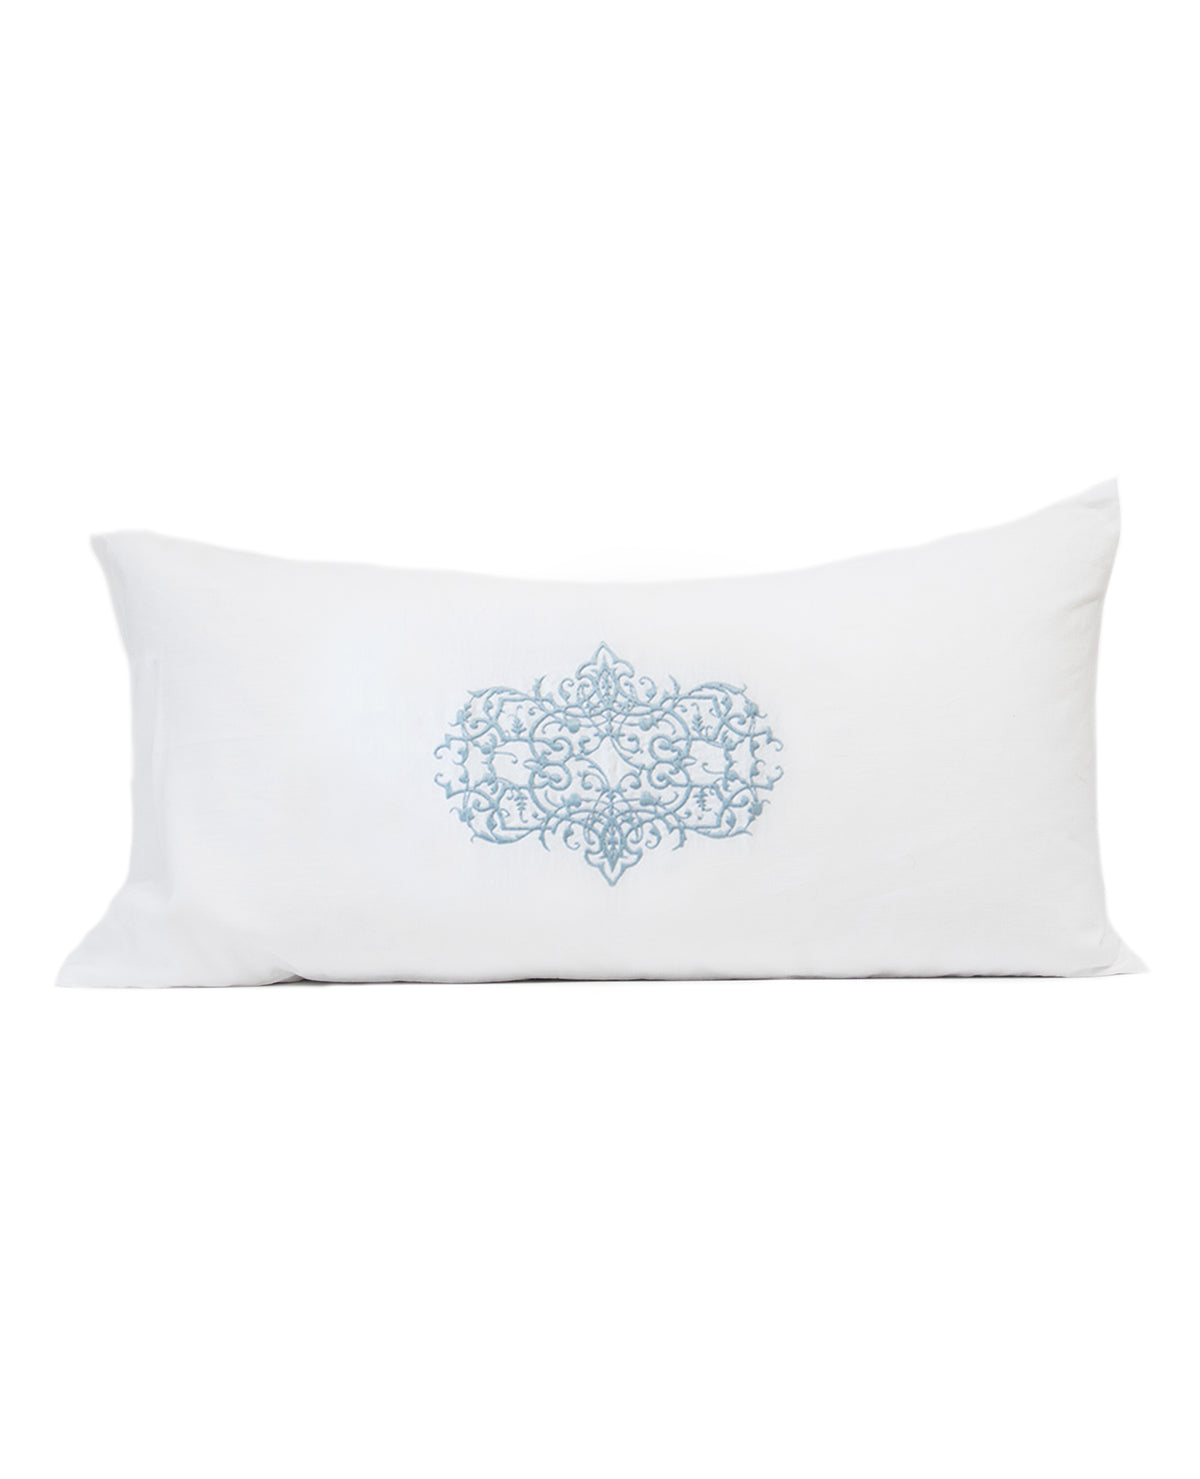 Lavato Monogram/White Linen Cushion